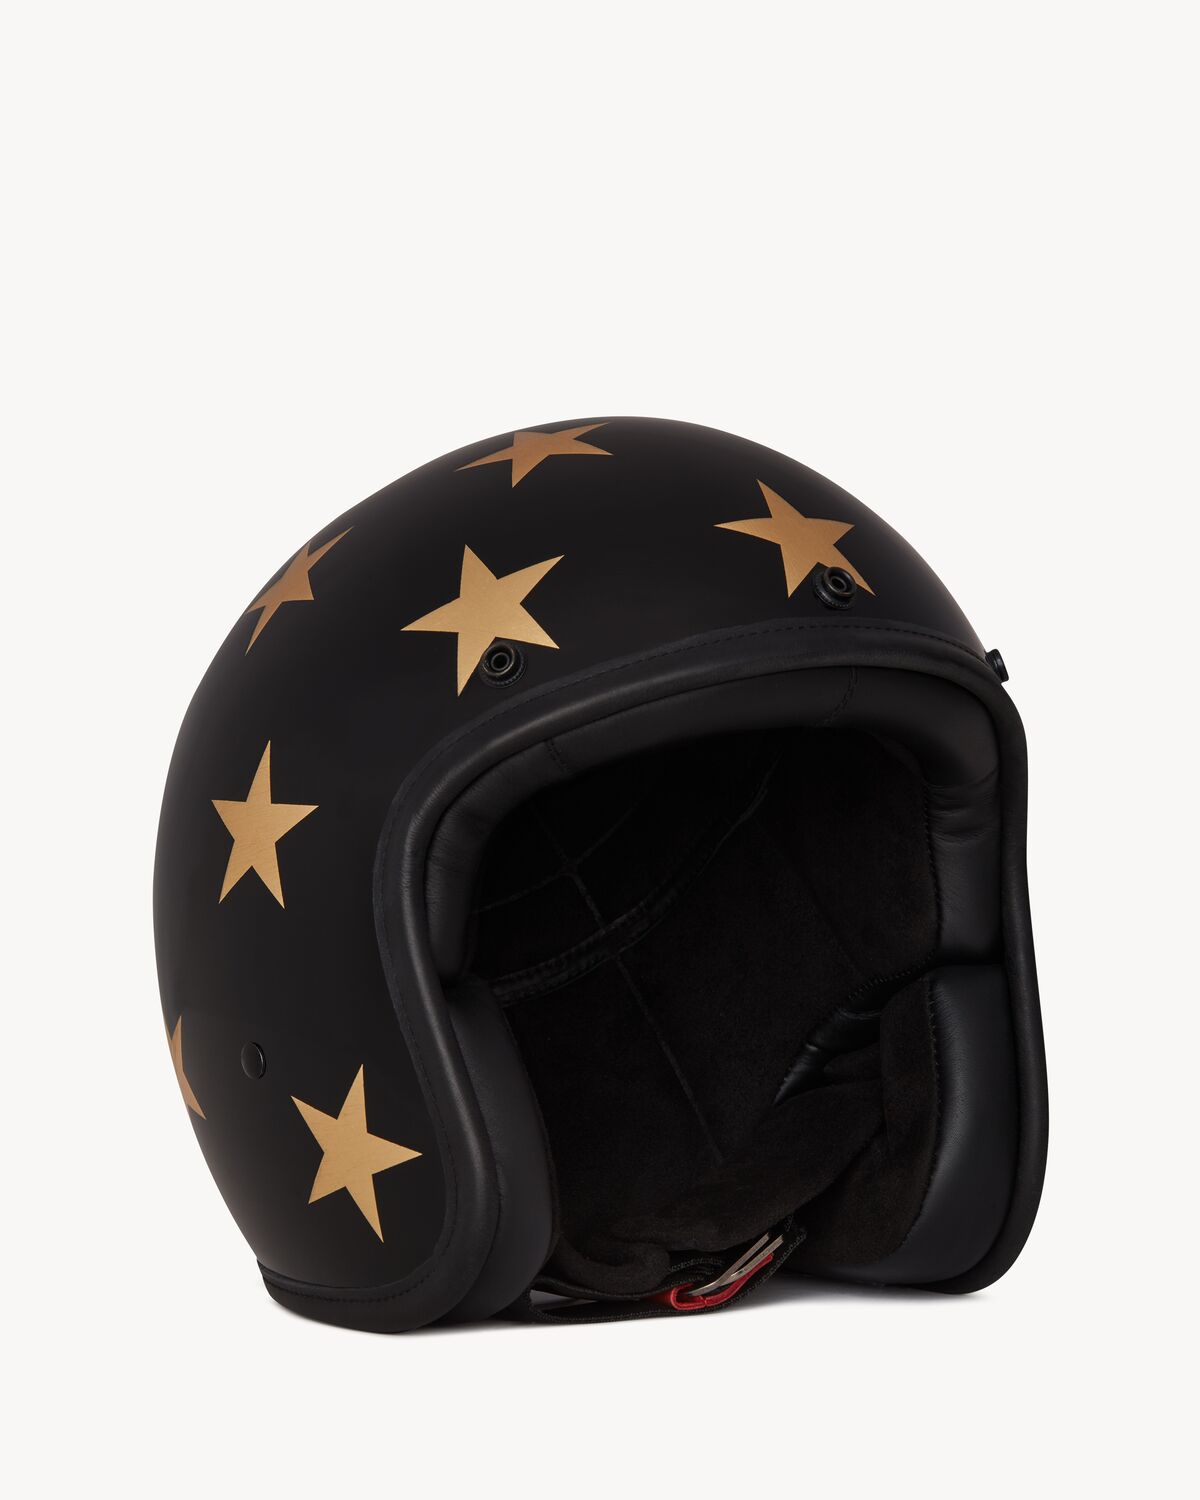 Hedon casque de moto à motif étoiles